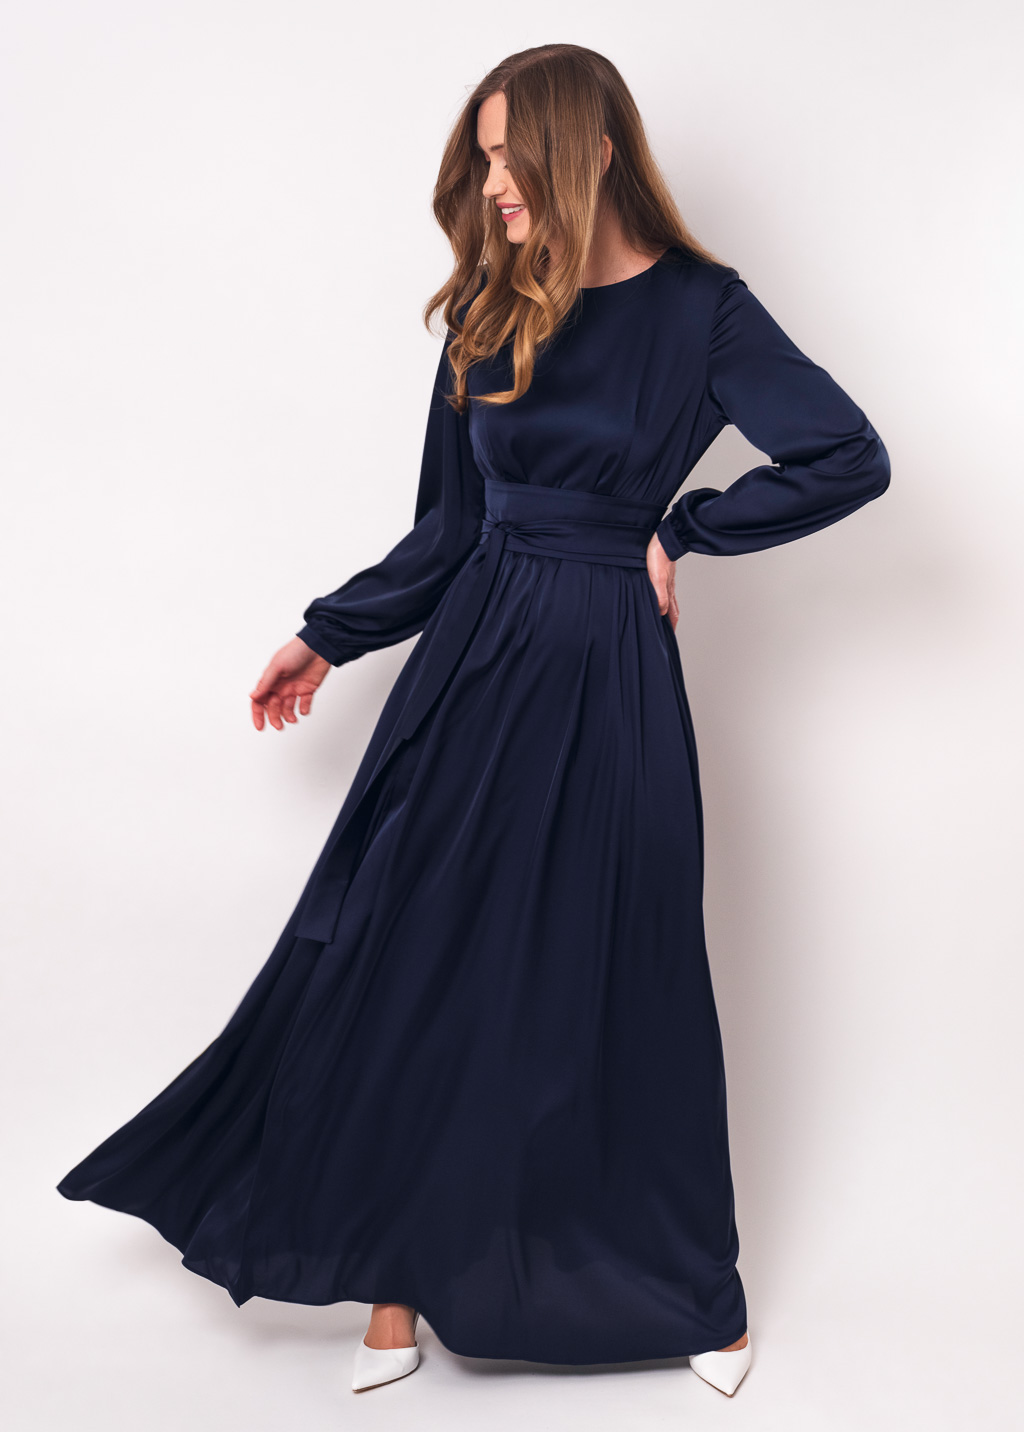 Navy blue long silk dress with belt